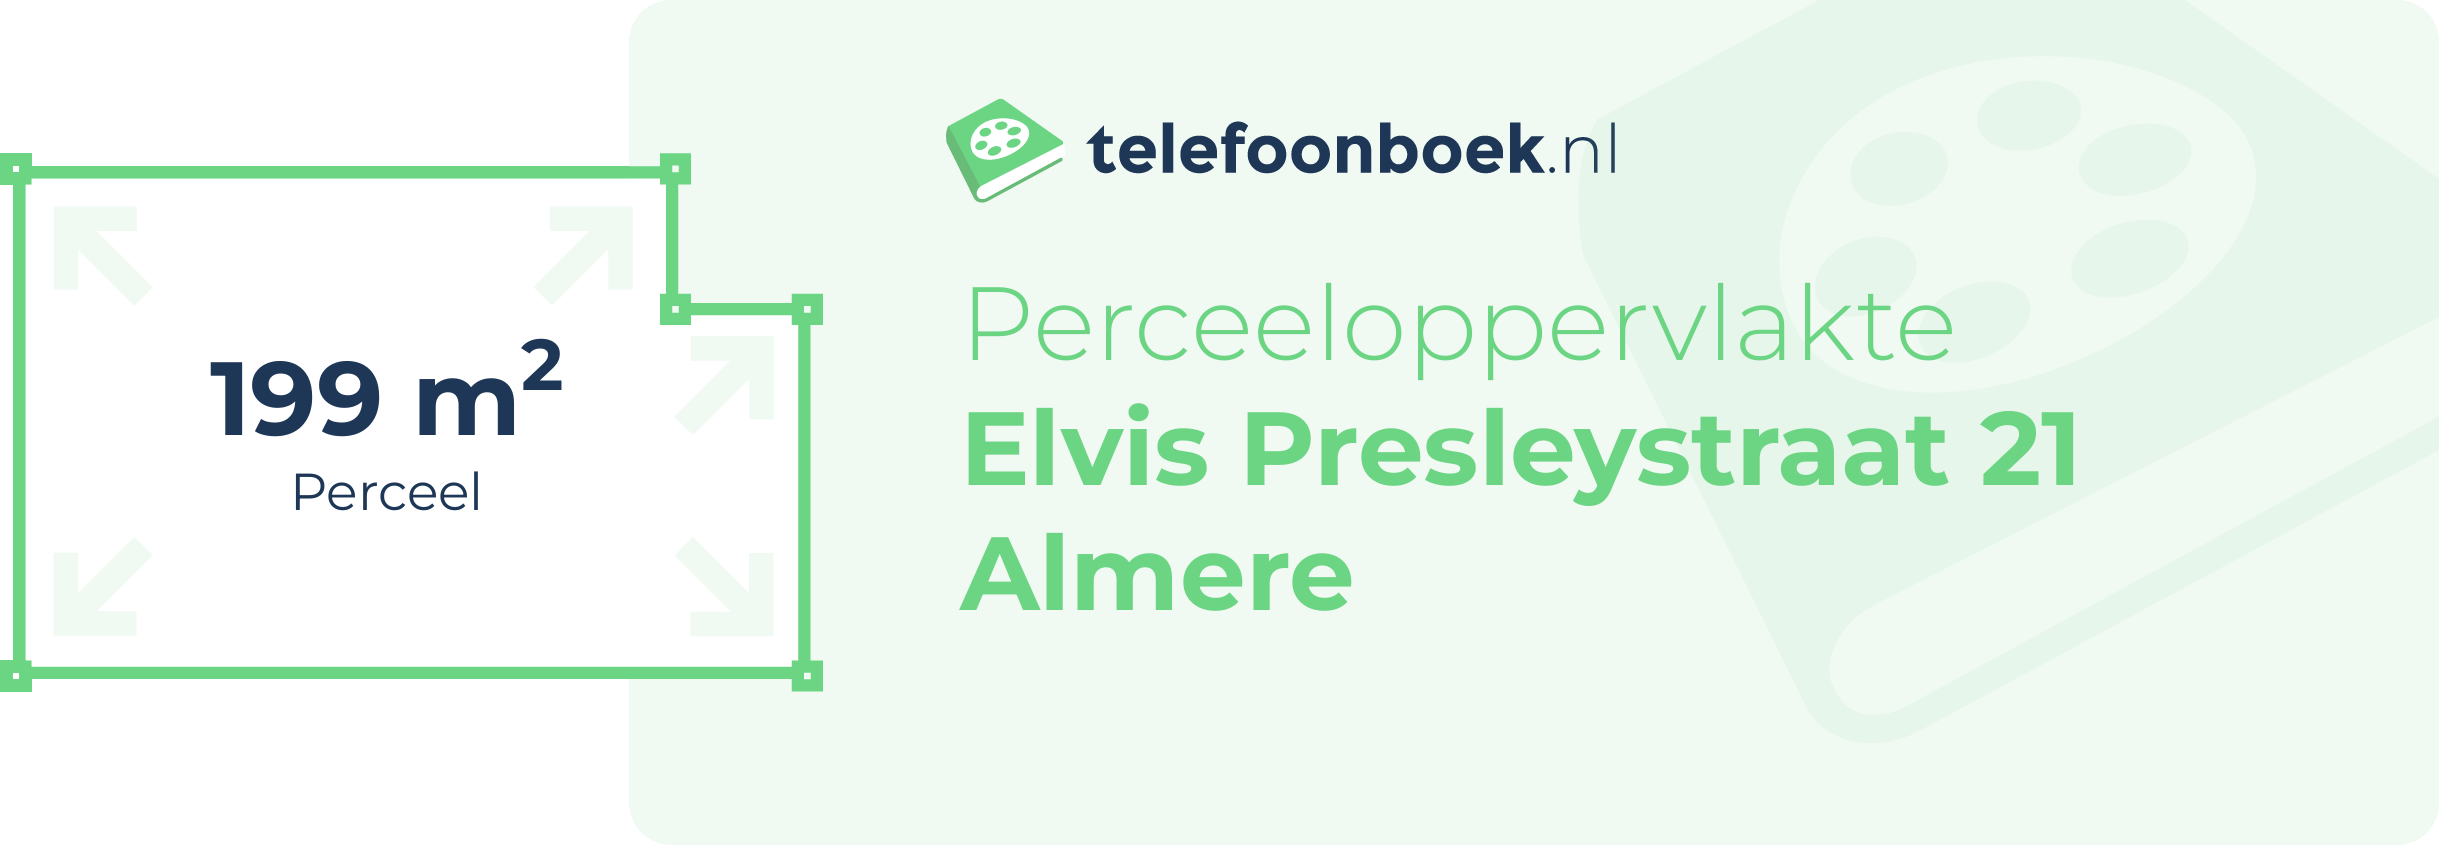 Perceeloppervlakte Elvis Presleystraat 21 Almere